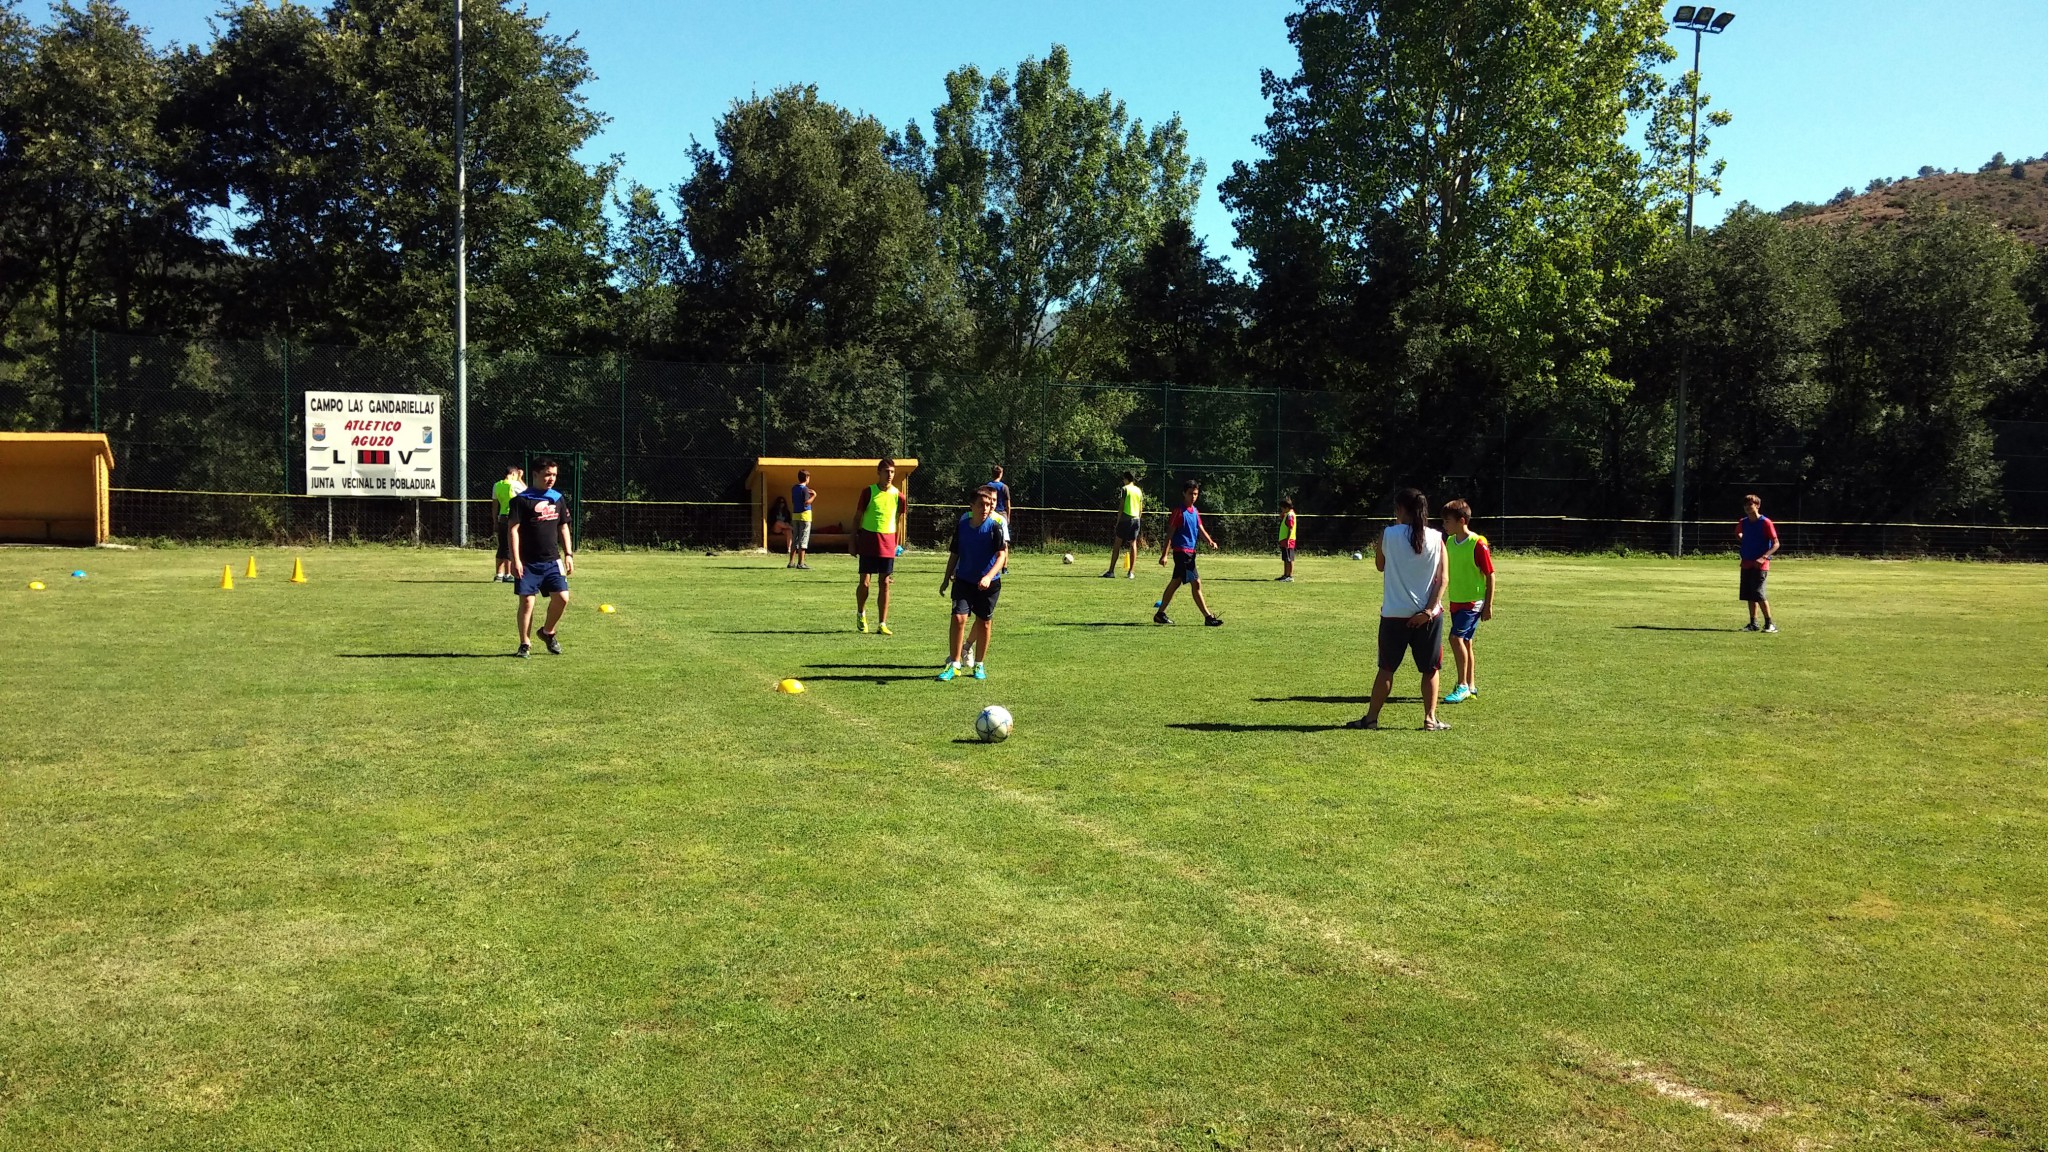 Campamento de verano con Fútbol y Multaventura para adolescentes en España León | partido de fútbol